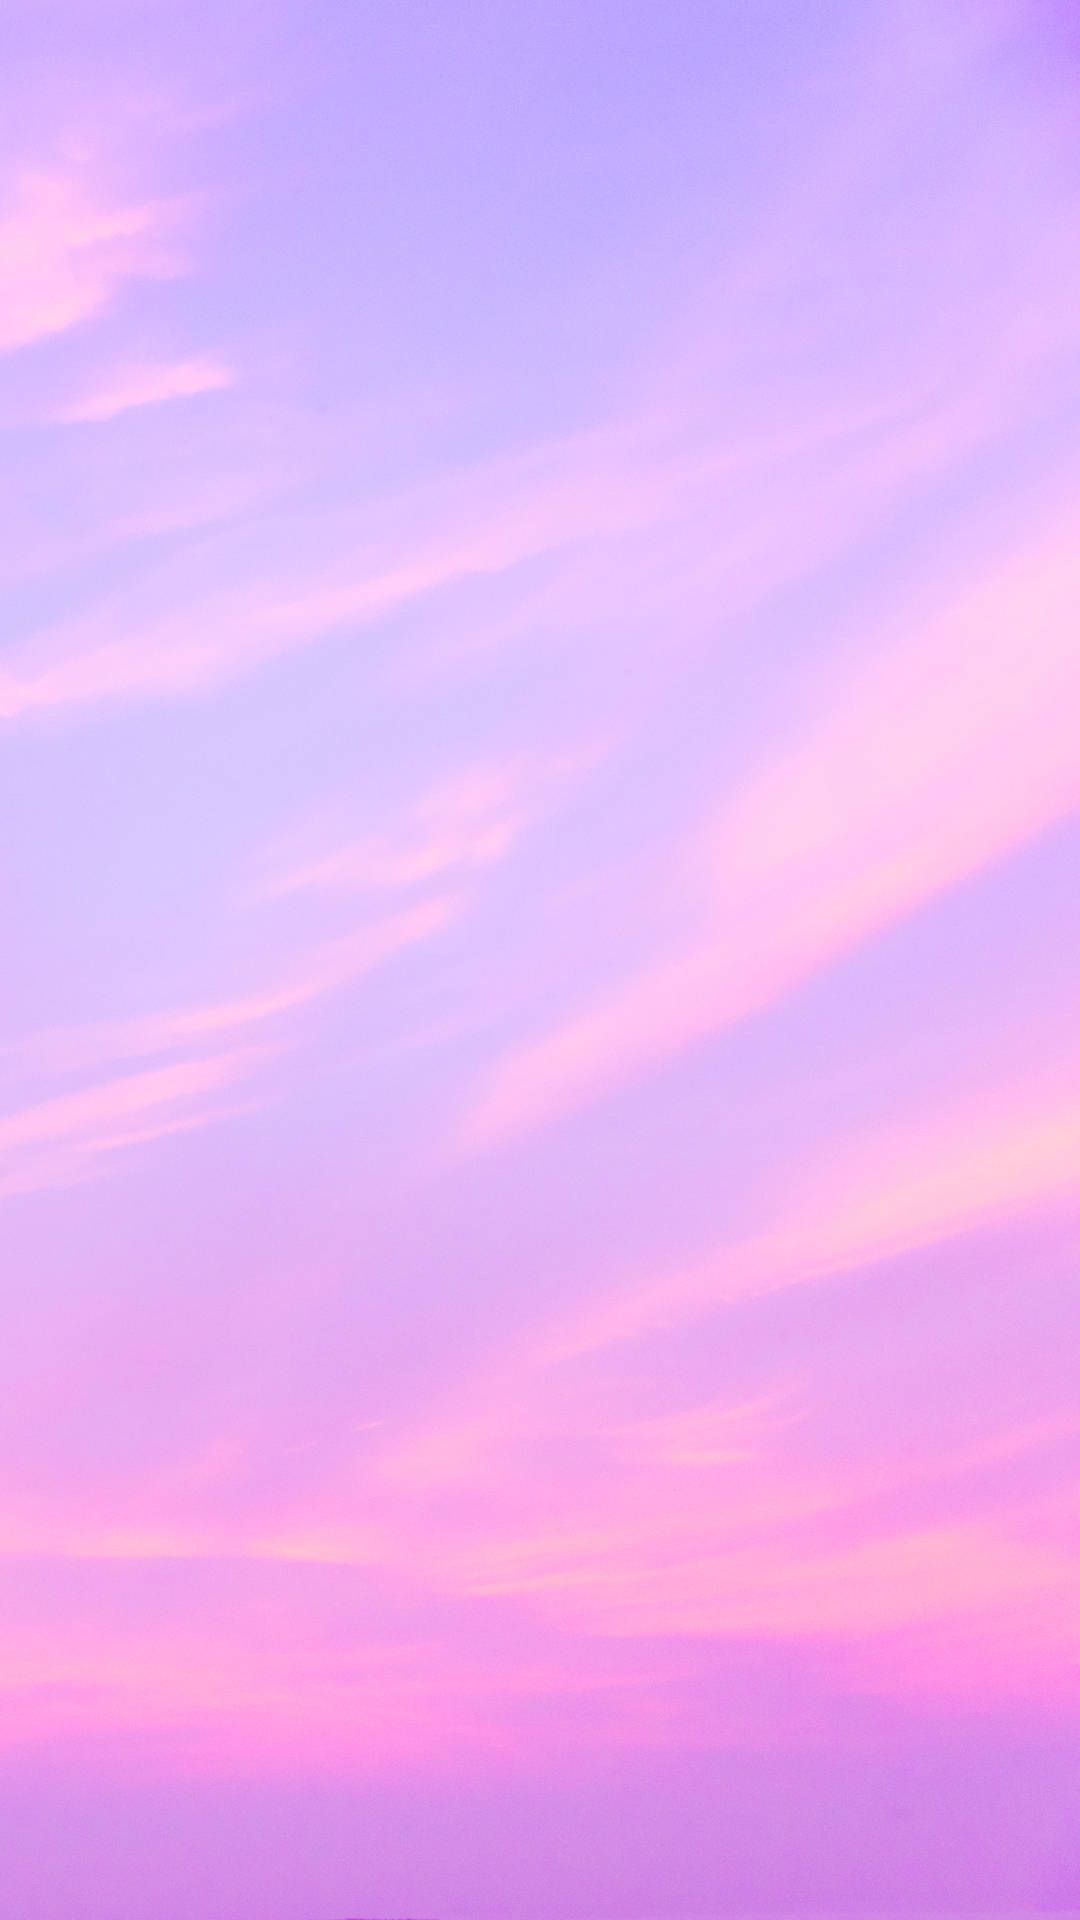 Pink Hintergrundbild 1080x1920. Download iPhone Pink Aesthetic Wispy Clouds Wallpaper